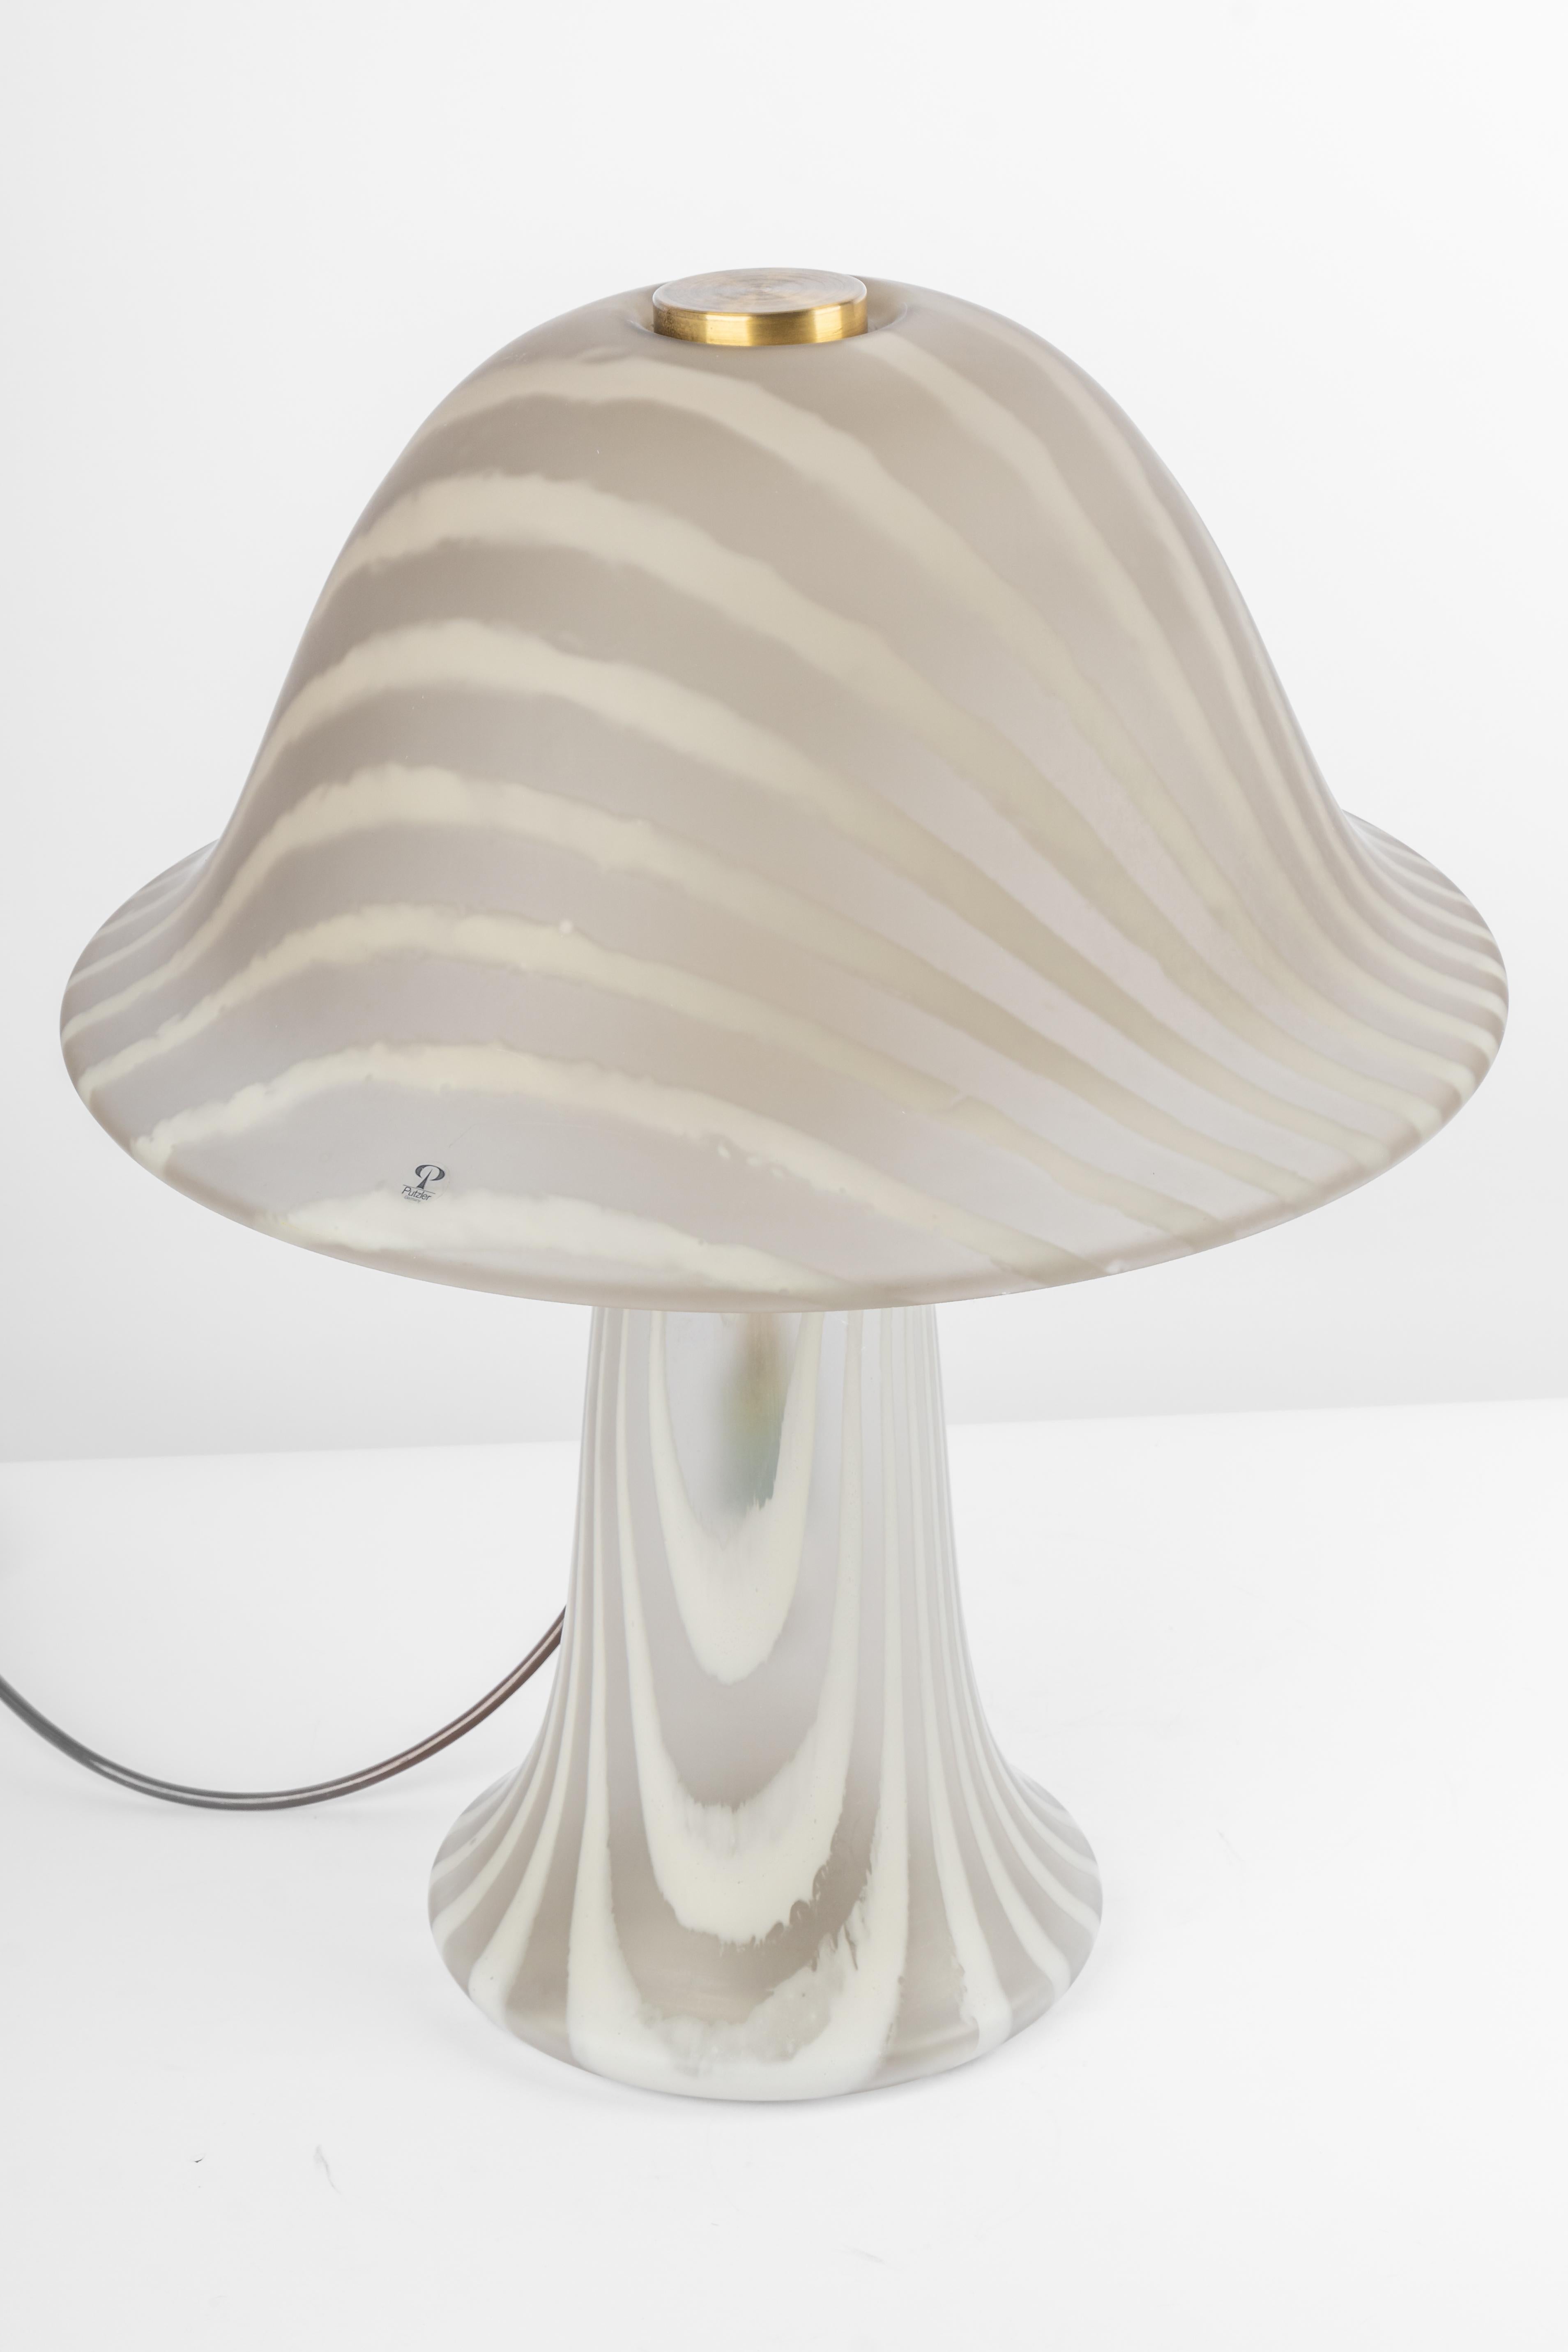 Merveilleuse lampe de table en forme de champignon de Peill & Putzler, Allemagne, années 1970. Fabriqué en 2 pièces.
Le corps en verre et sa qualité tranchante contrastent joliment avec la surface lisse et la forme du champignon. 

Mesures : Grande